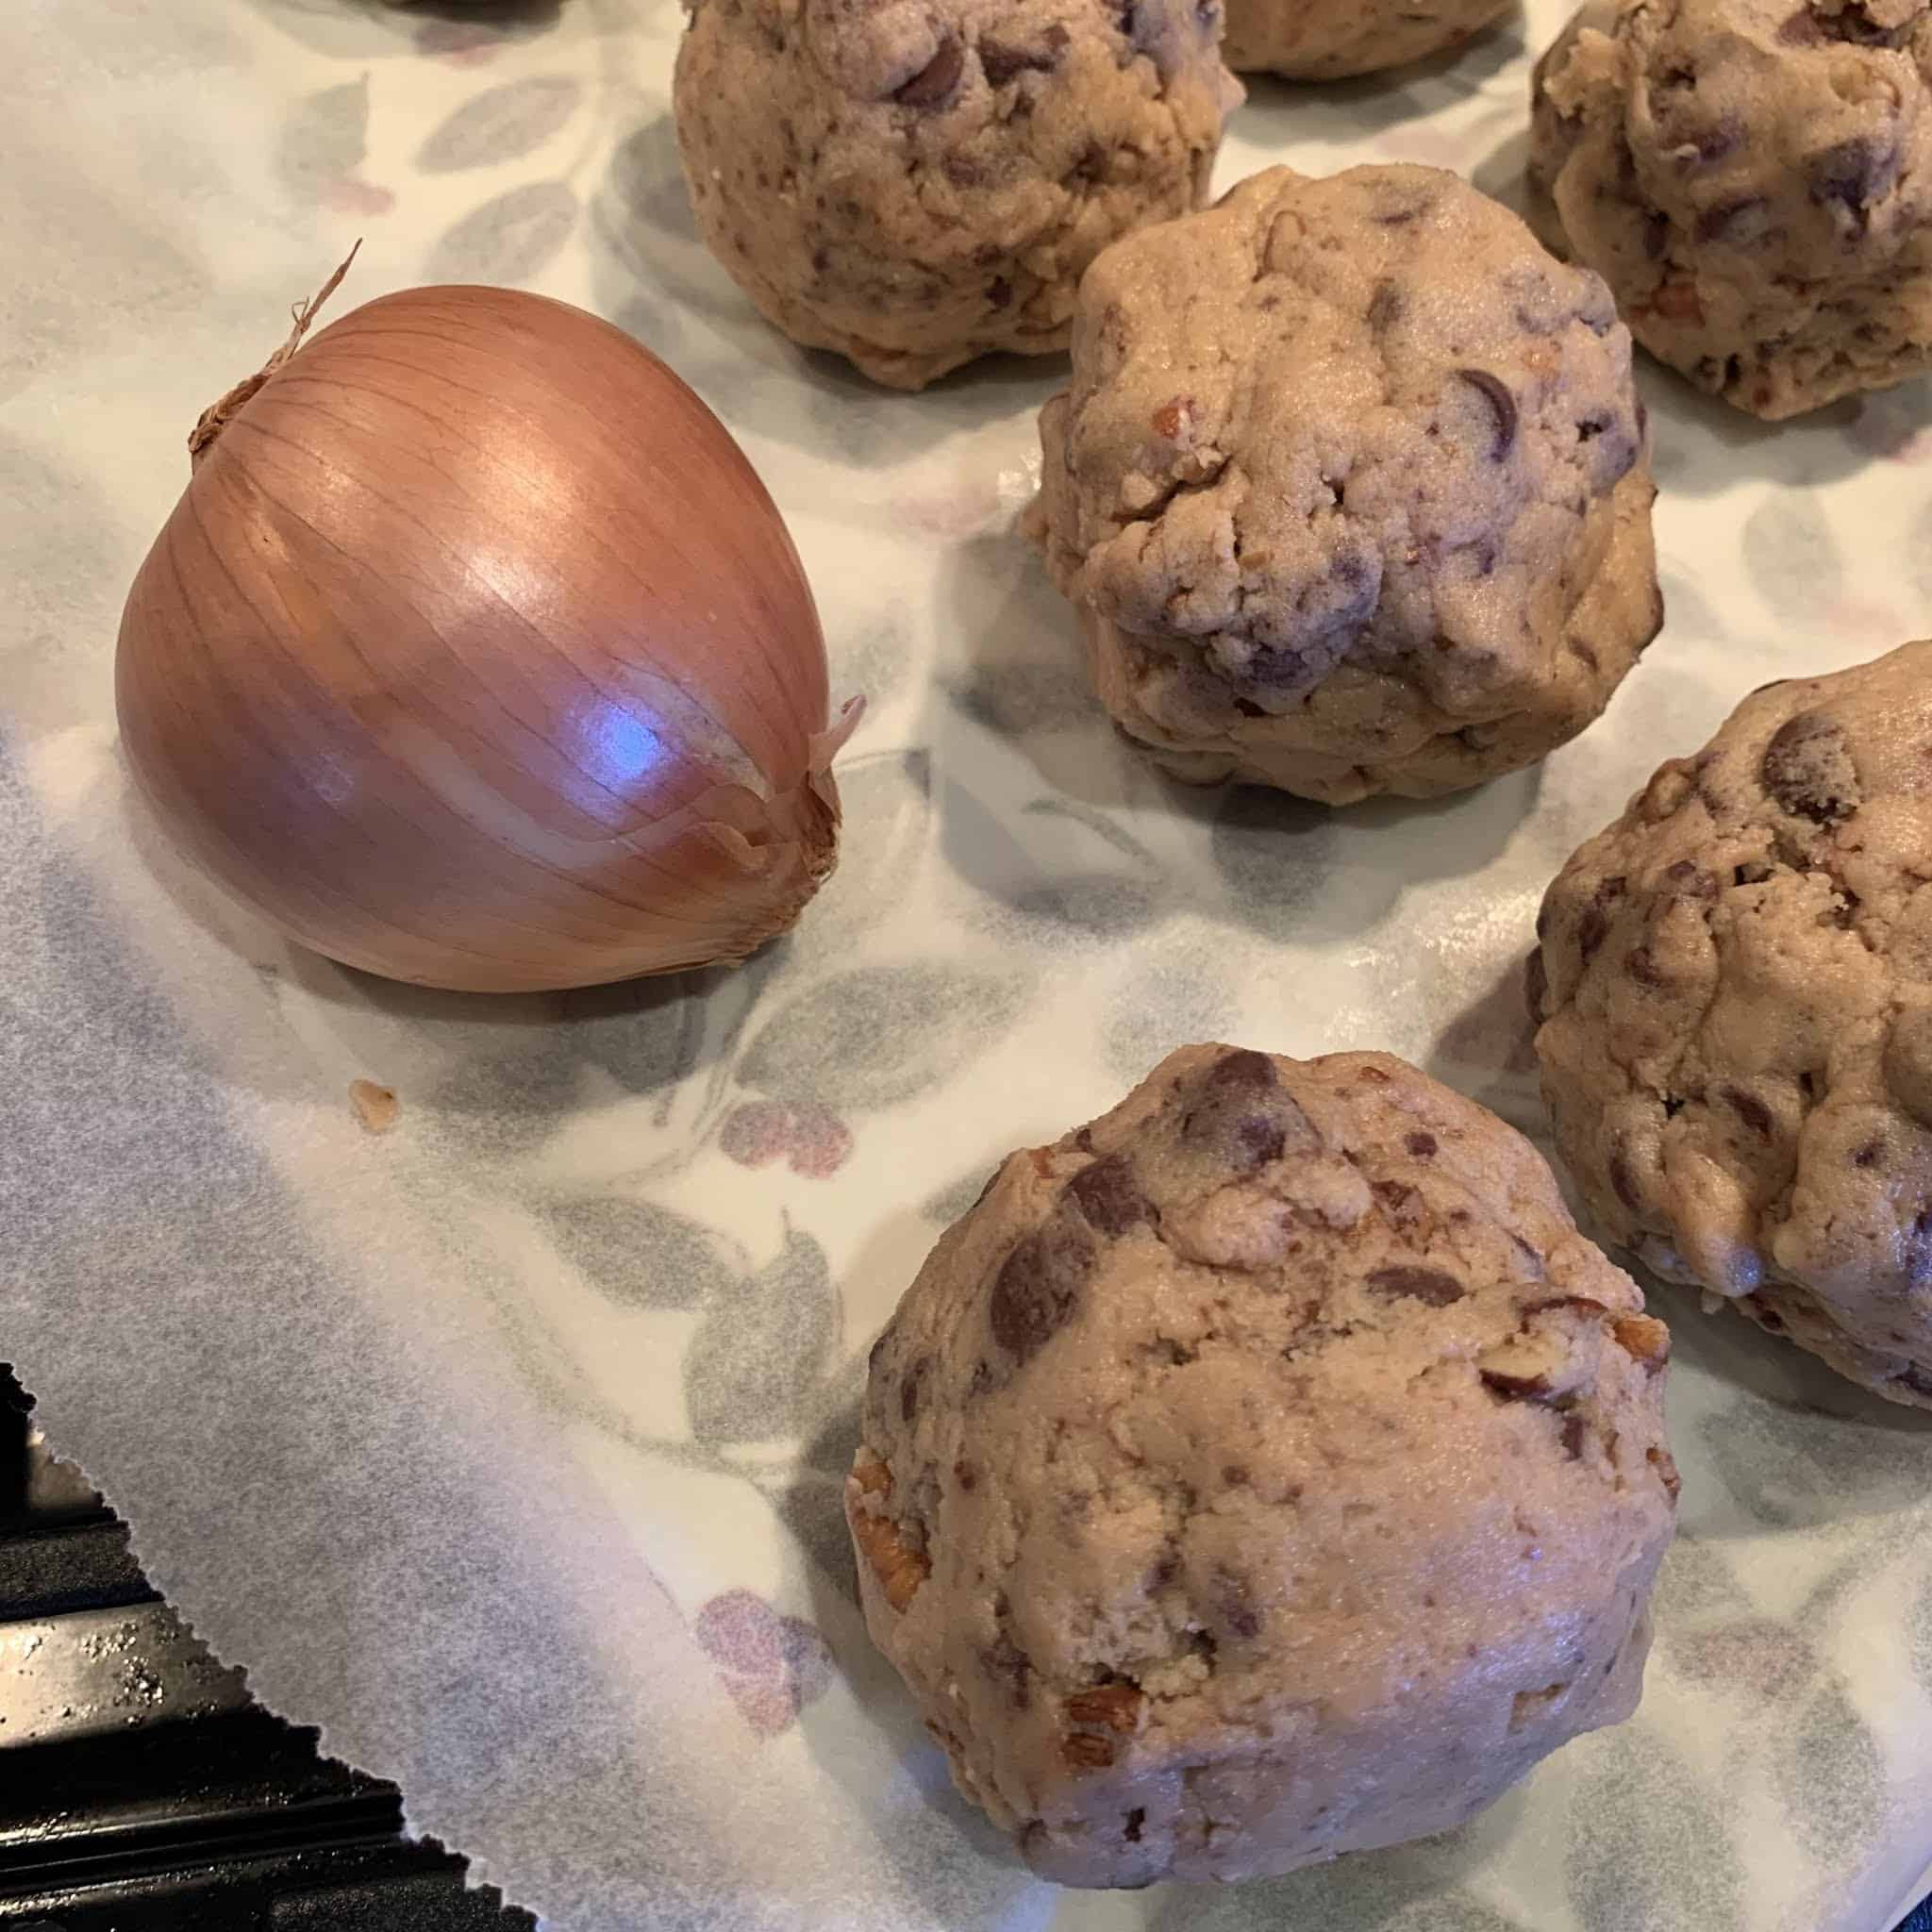 Cookie-onion comparison